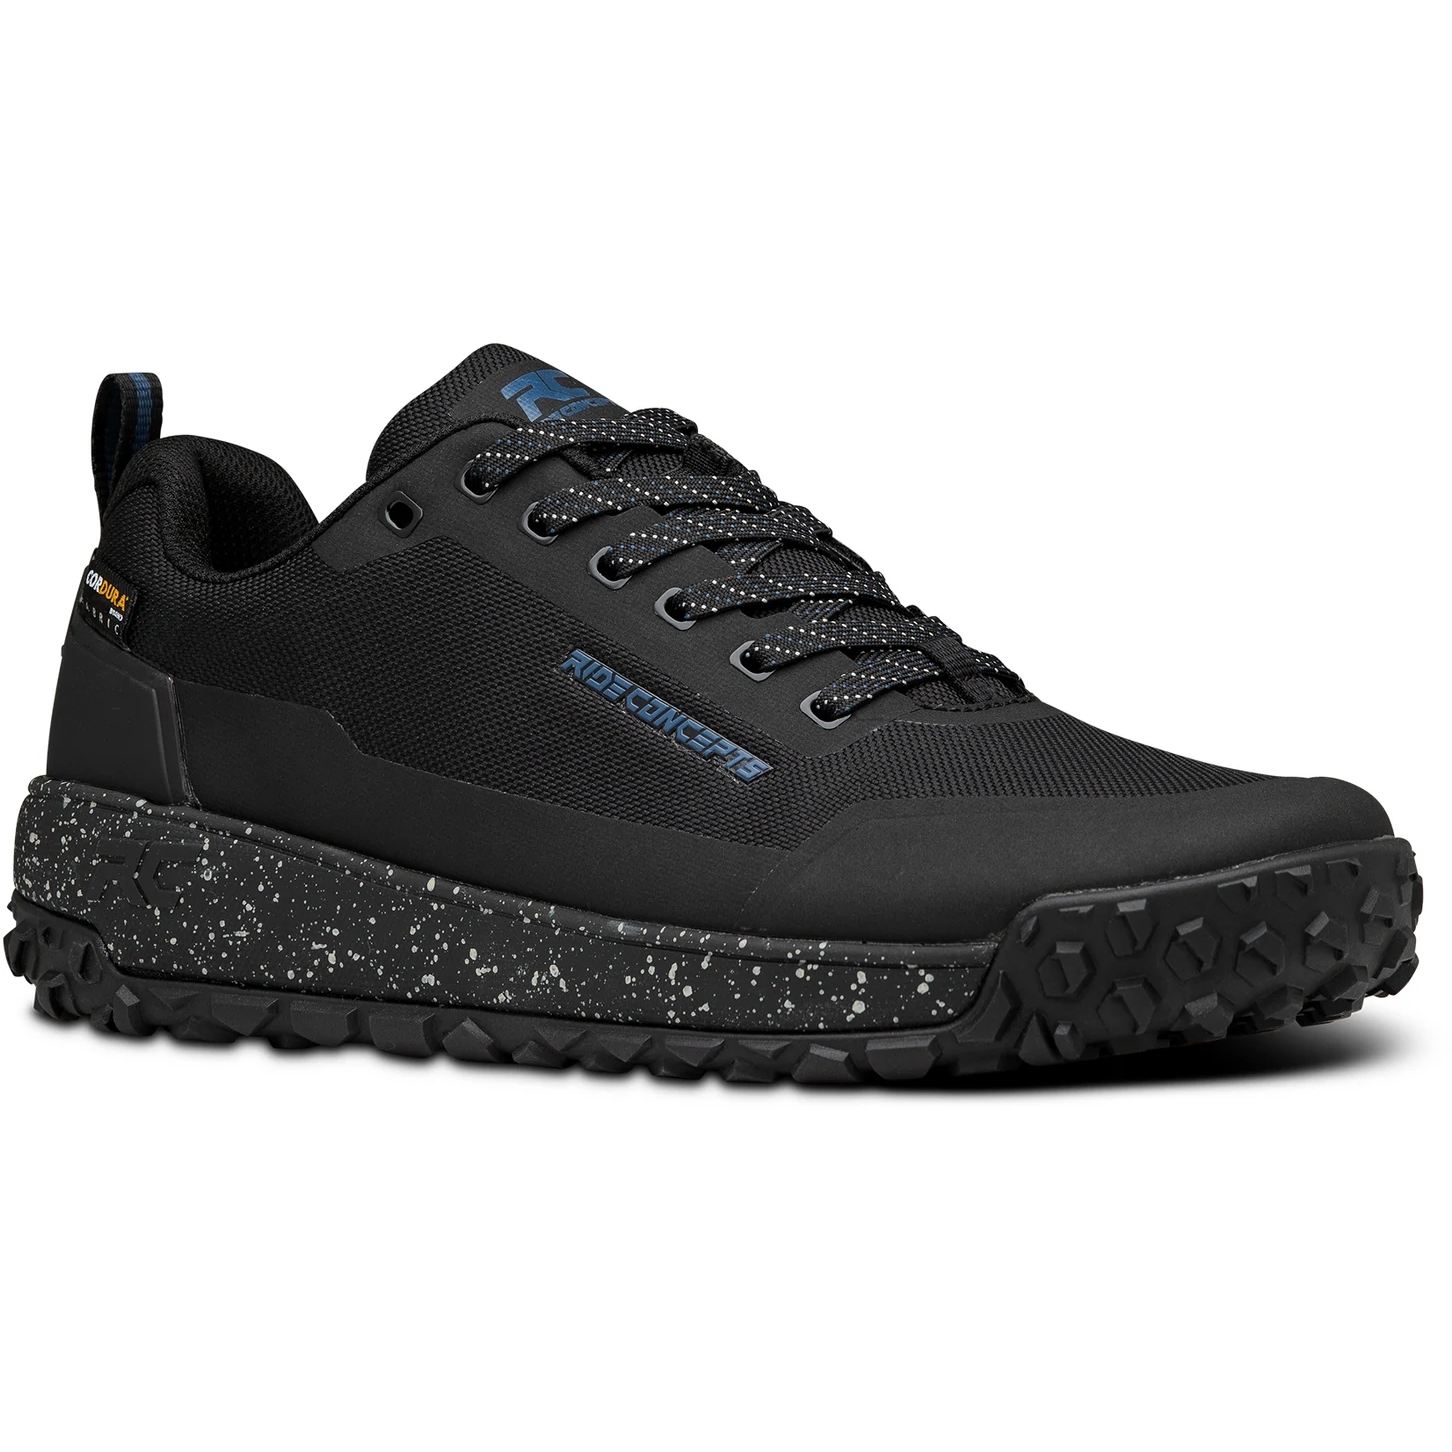 Productfoto van Ride Concepts Tallac Flat MTB Shoes - Black/Charcoal